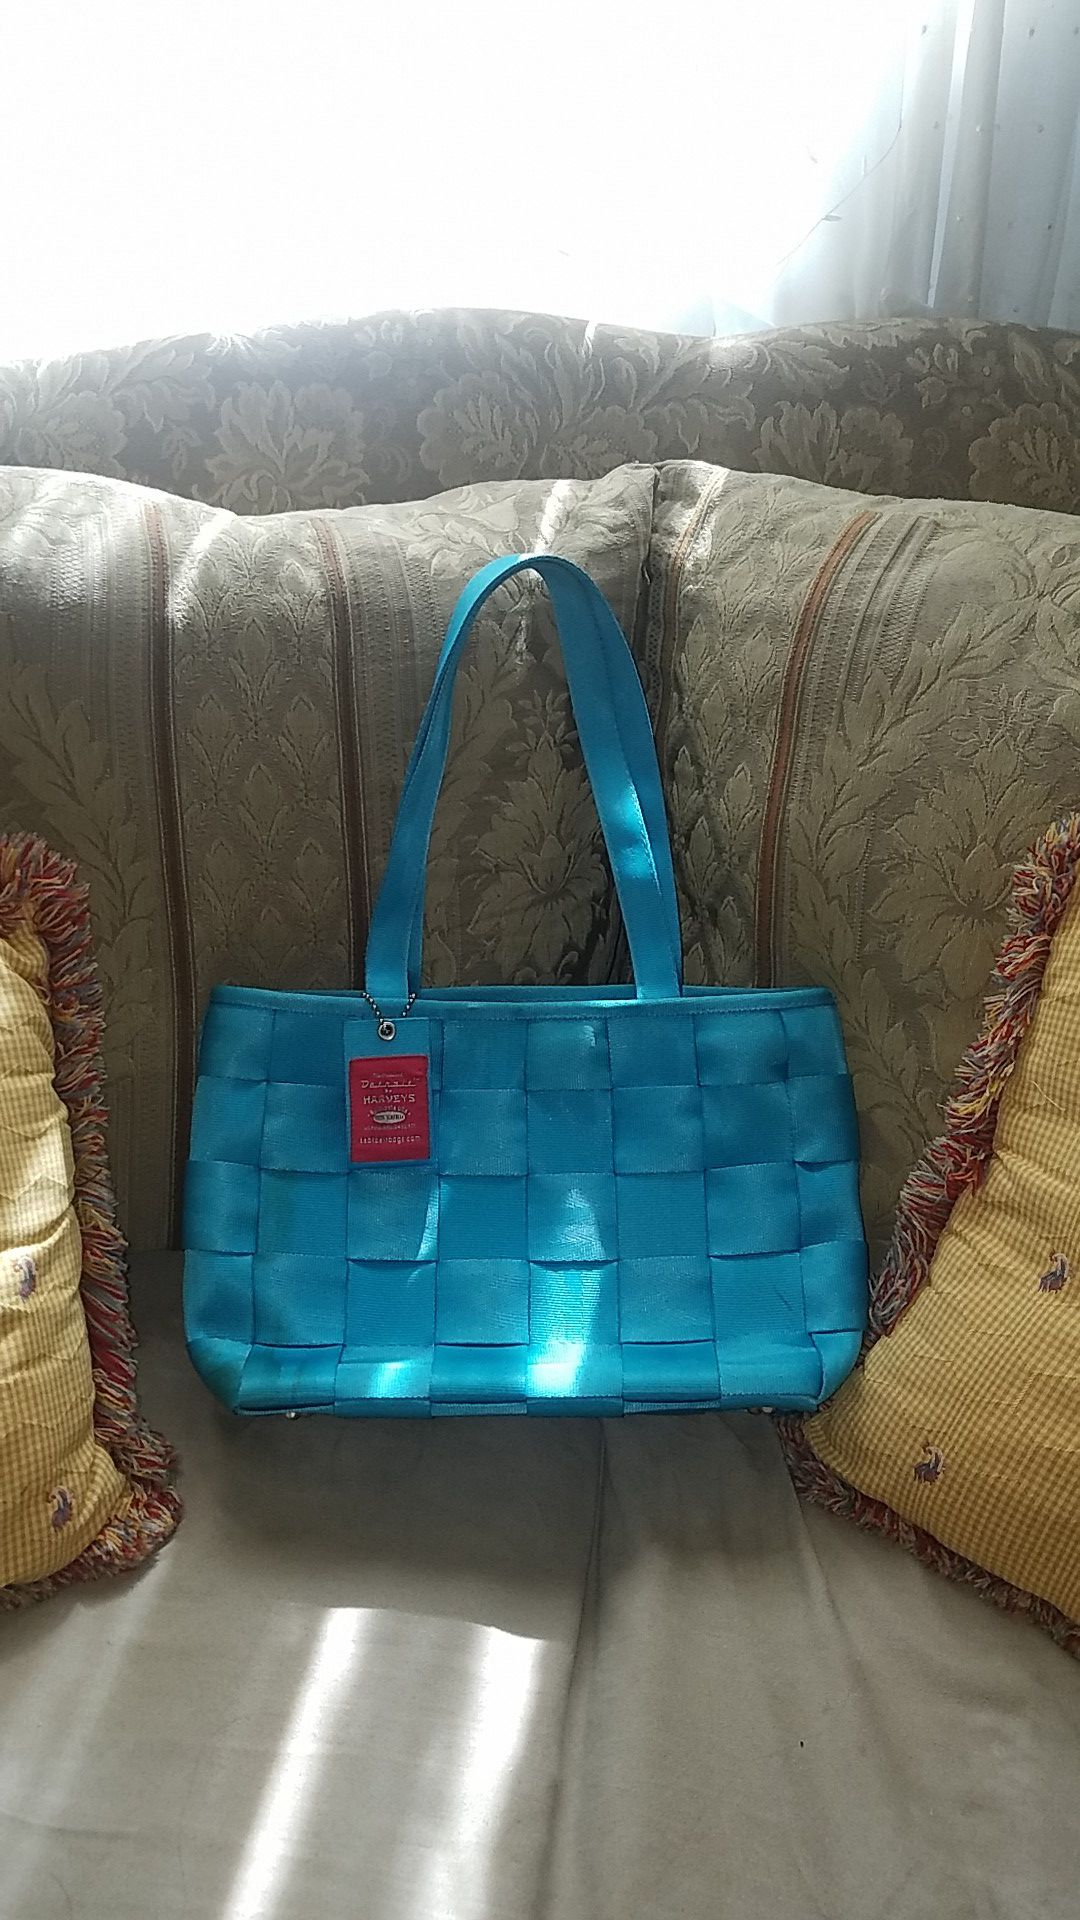 Harvey's tote bag in blue